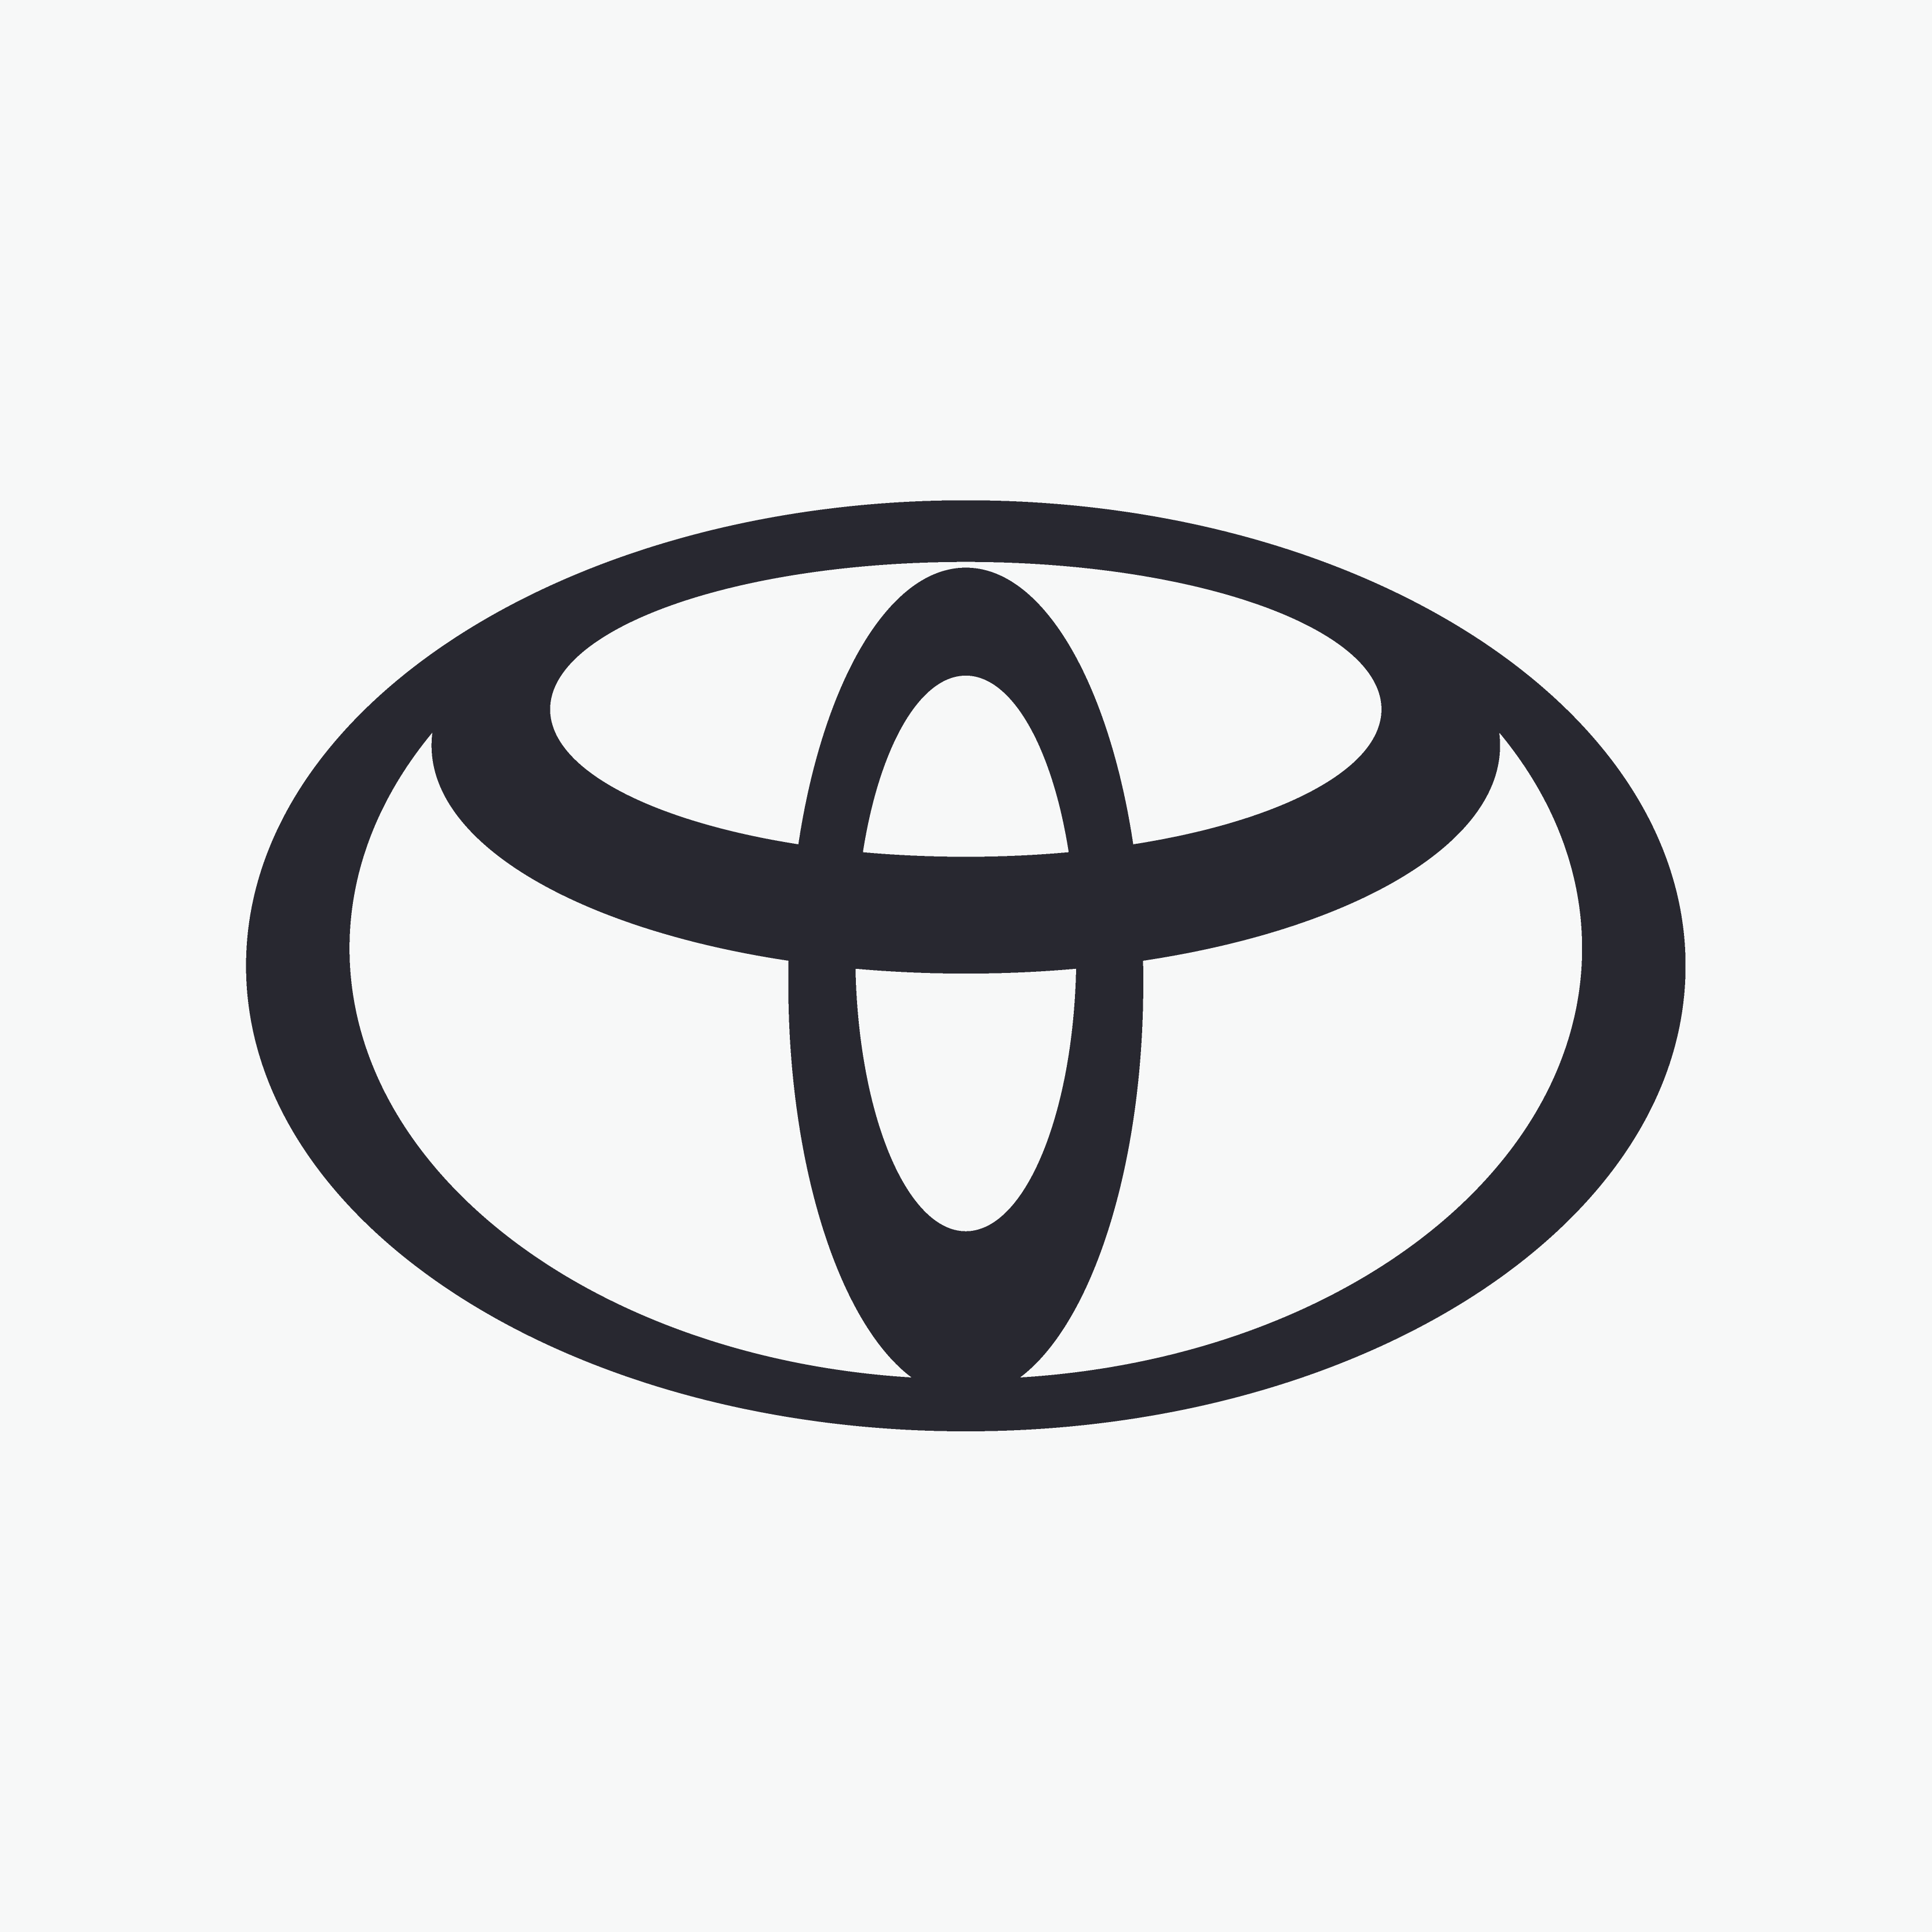 Toyota najcenniejszą marką motoryzacyjną na świecie według Interbrand